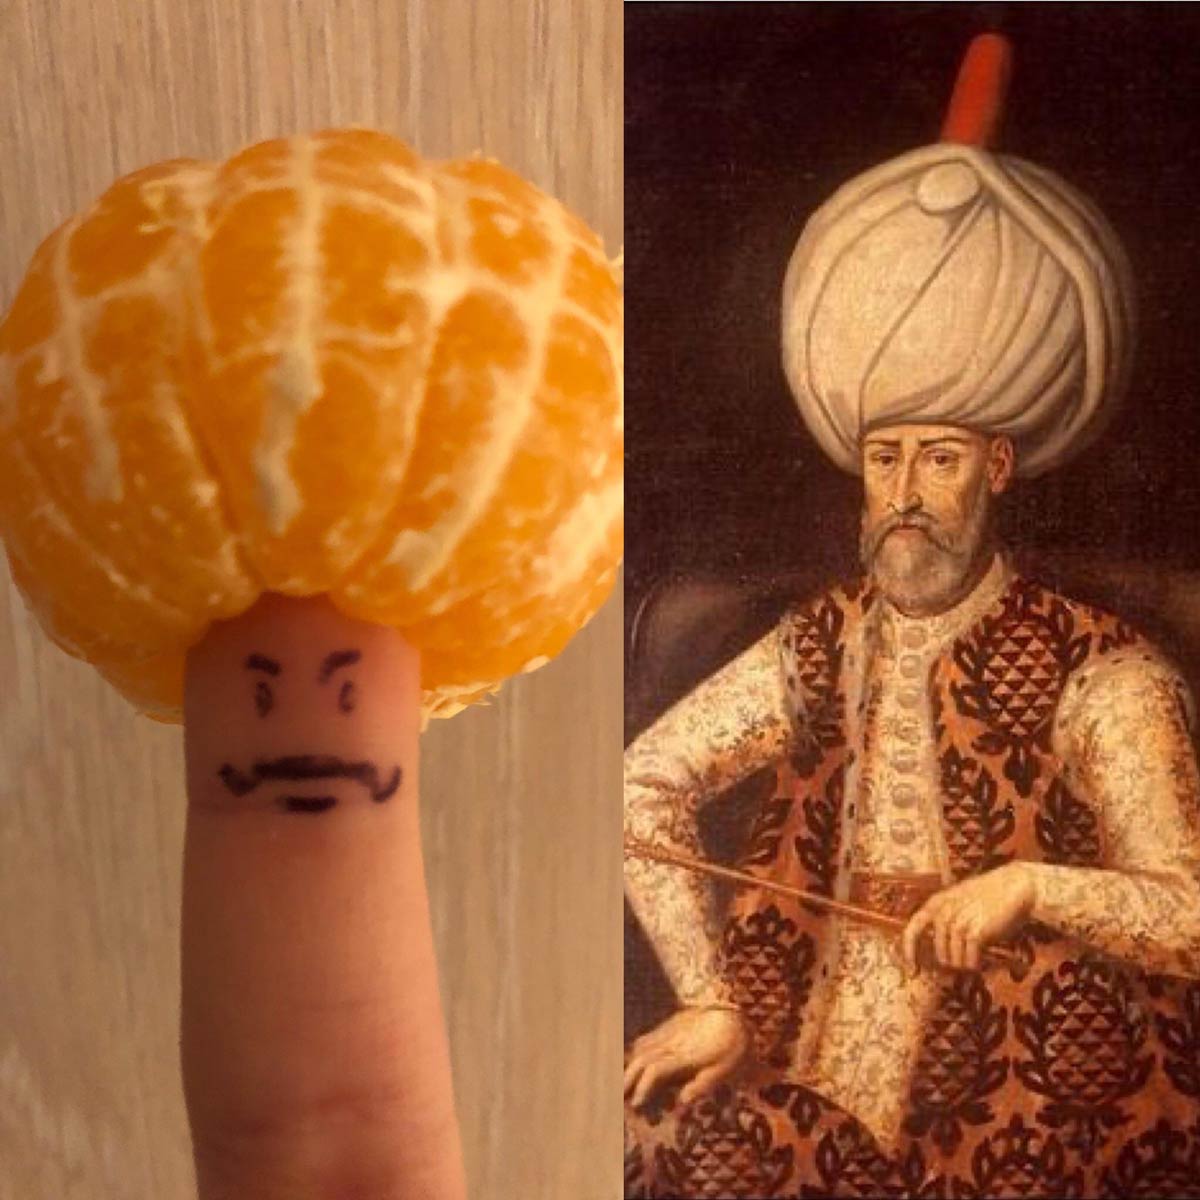 Accurate representation of the Ottoman Sultan Suleiman the Magnificent